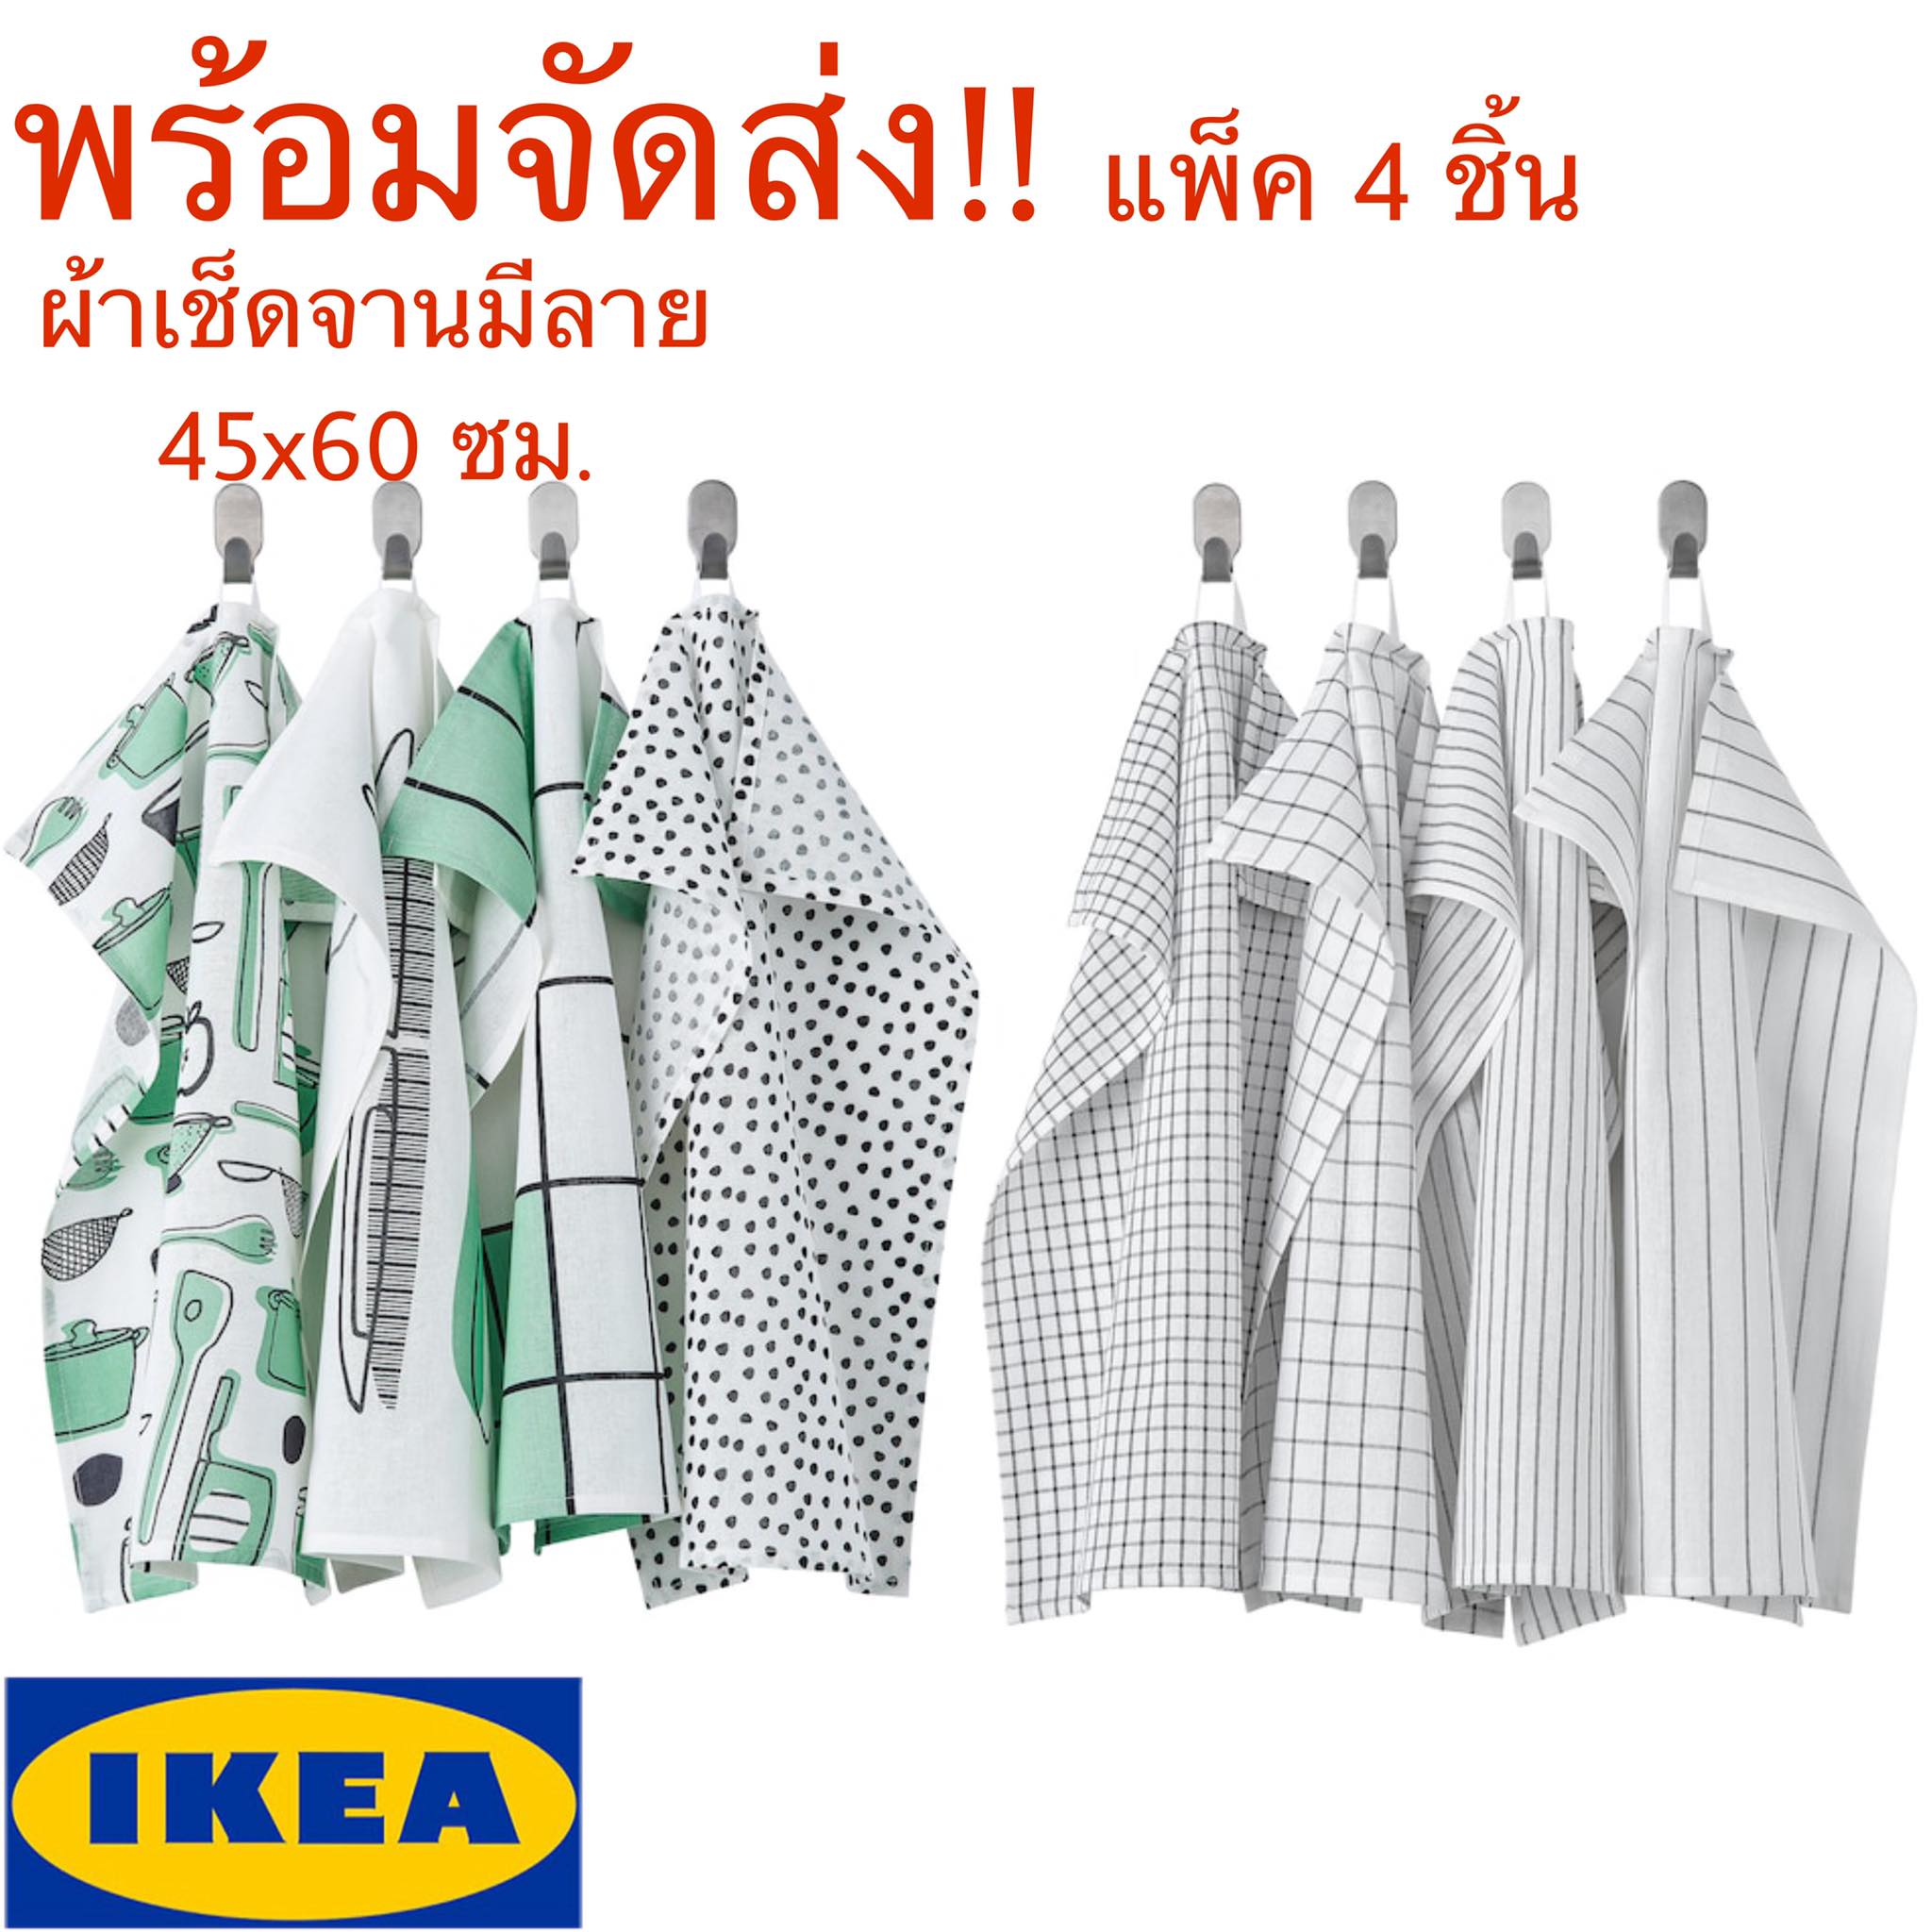 IKEA RINNIG รินนิก ผ้าเช็ดจาน,มีลาย 45x60 ซม.  ขาว/เทา,ขาว/เขียว*ราคาต่อชุด*